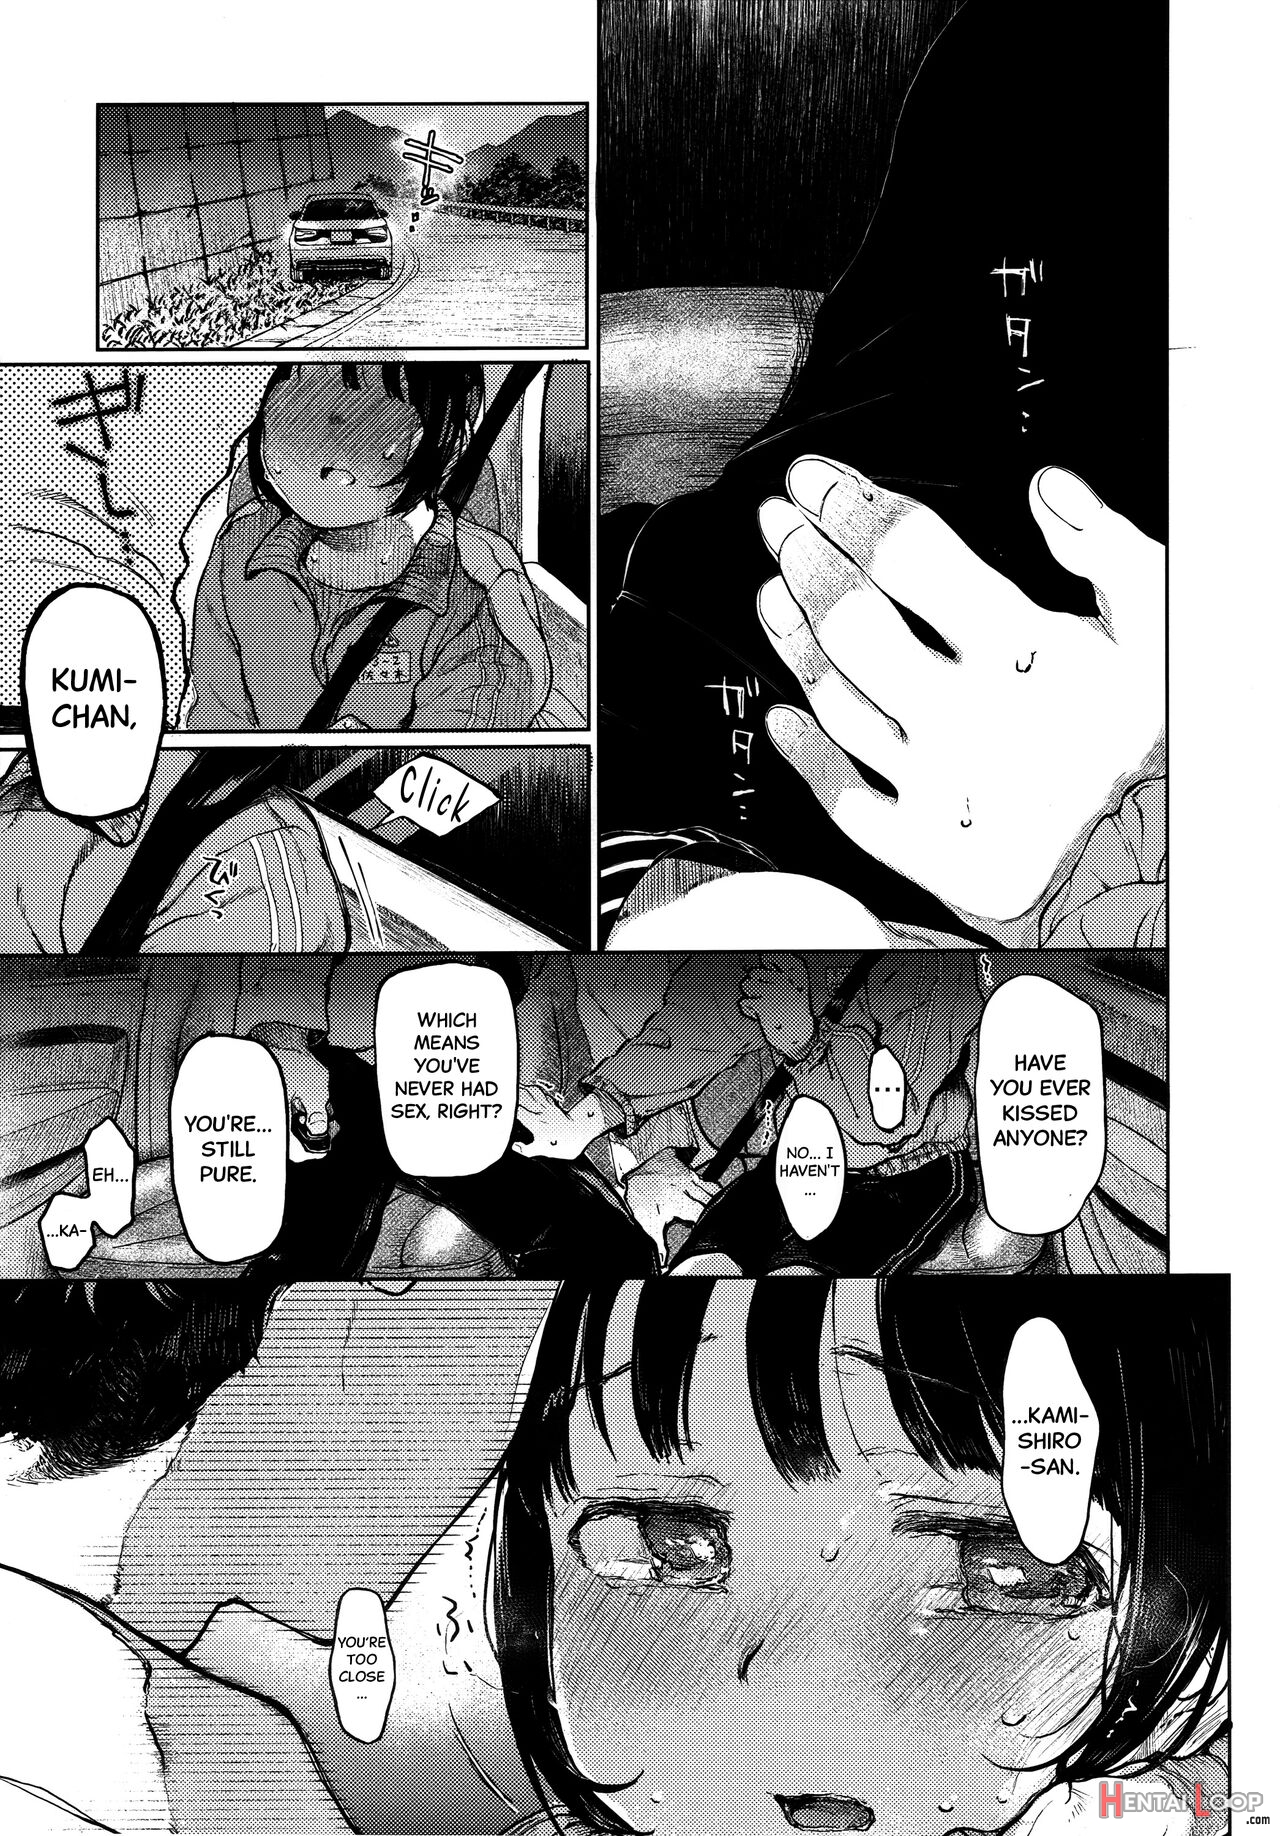 Kumi-chan page 10